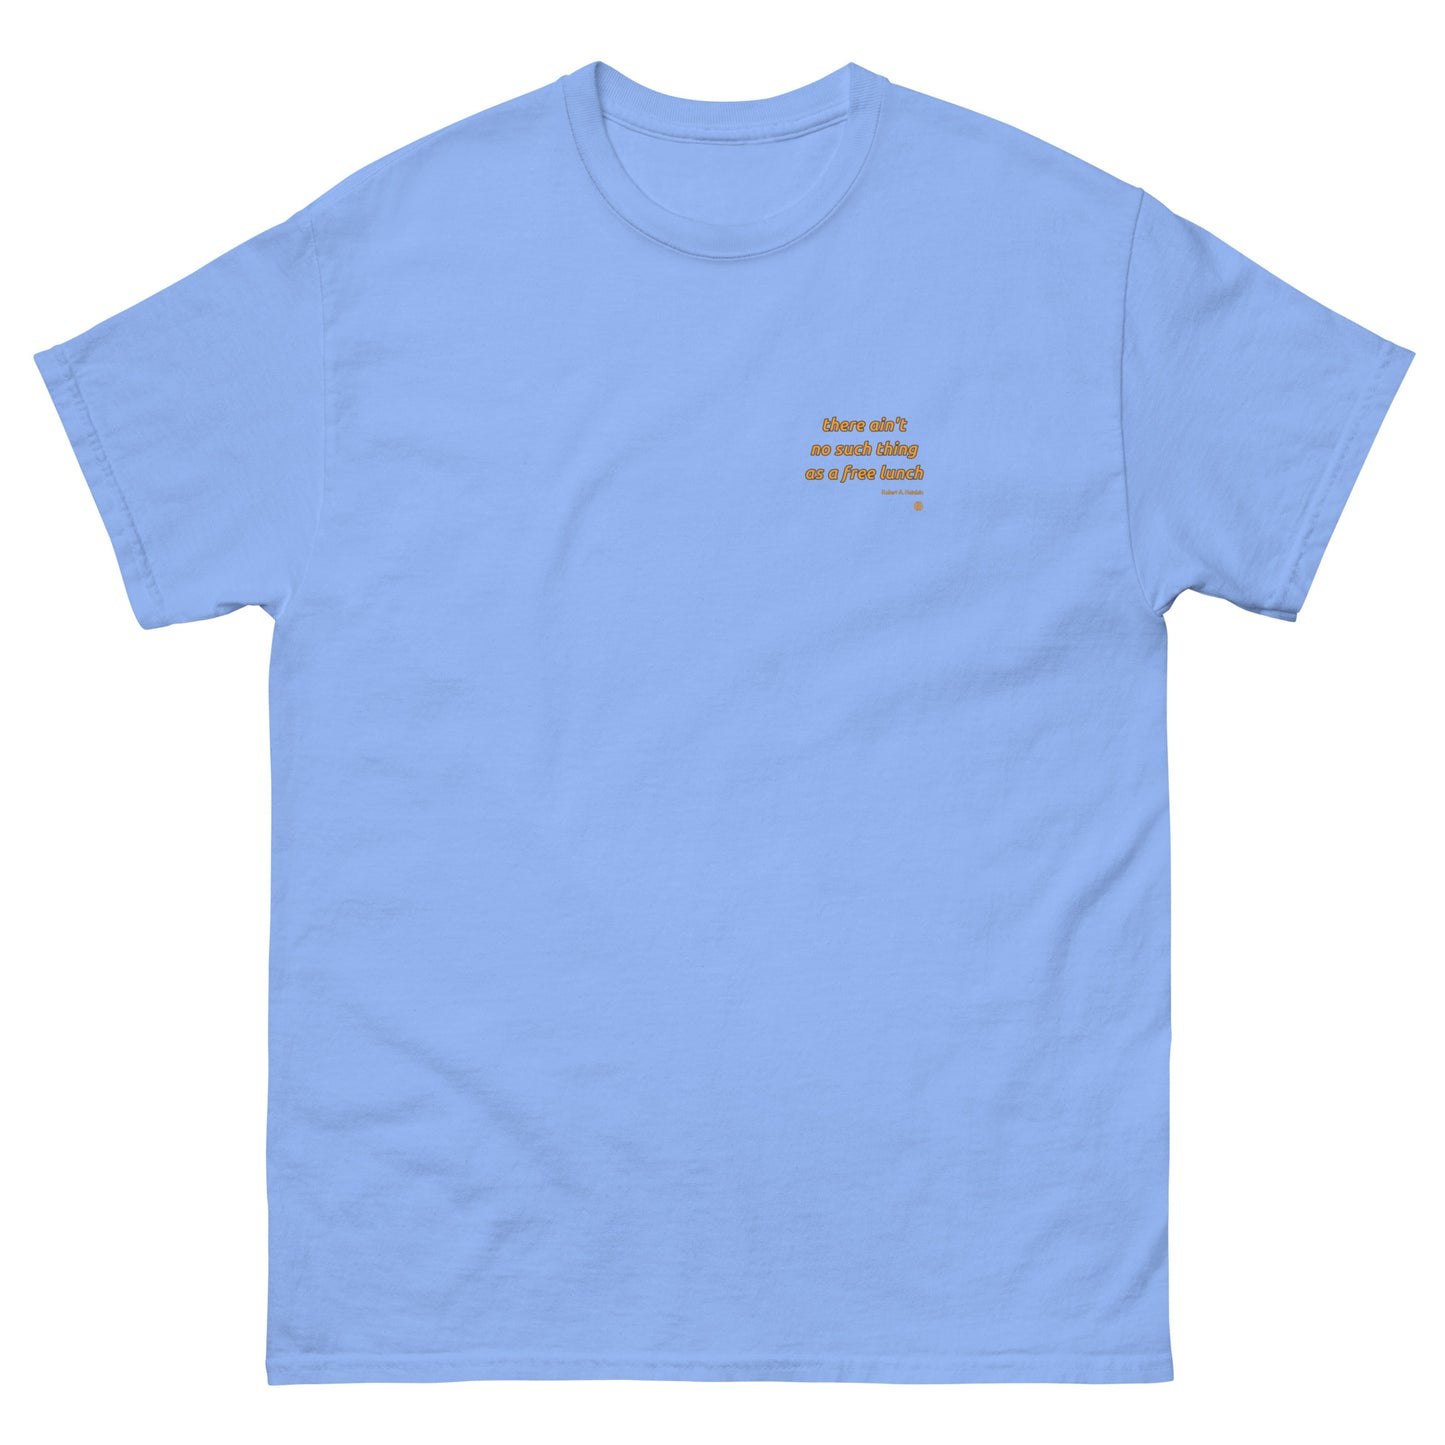 Camiseta clásica para hombre "FreeLunch_sm"